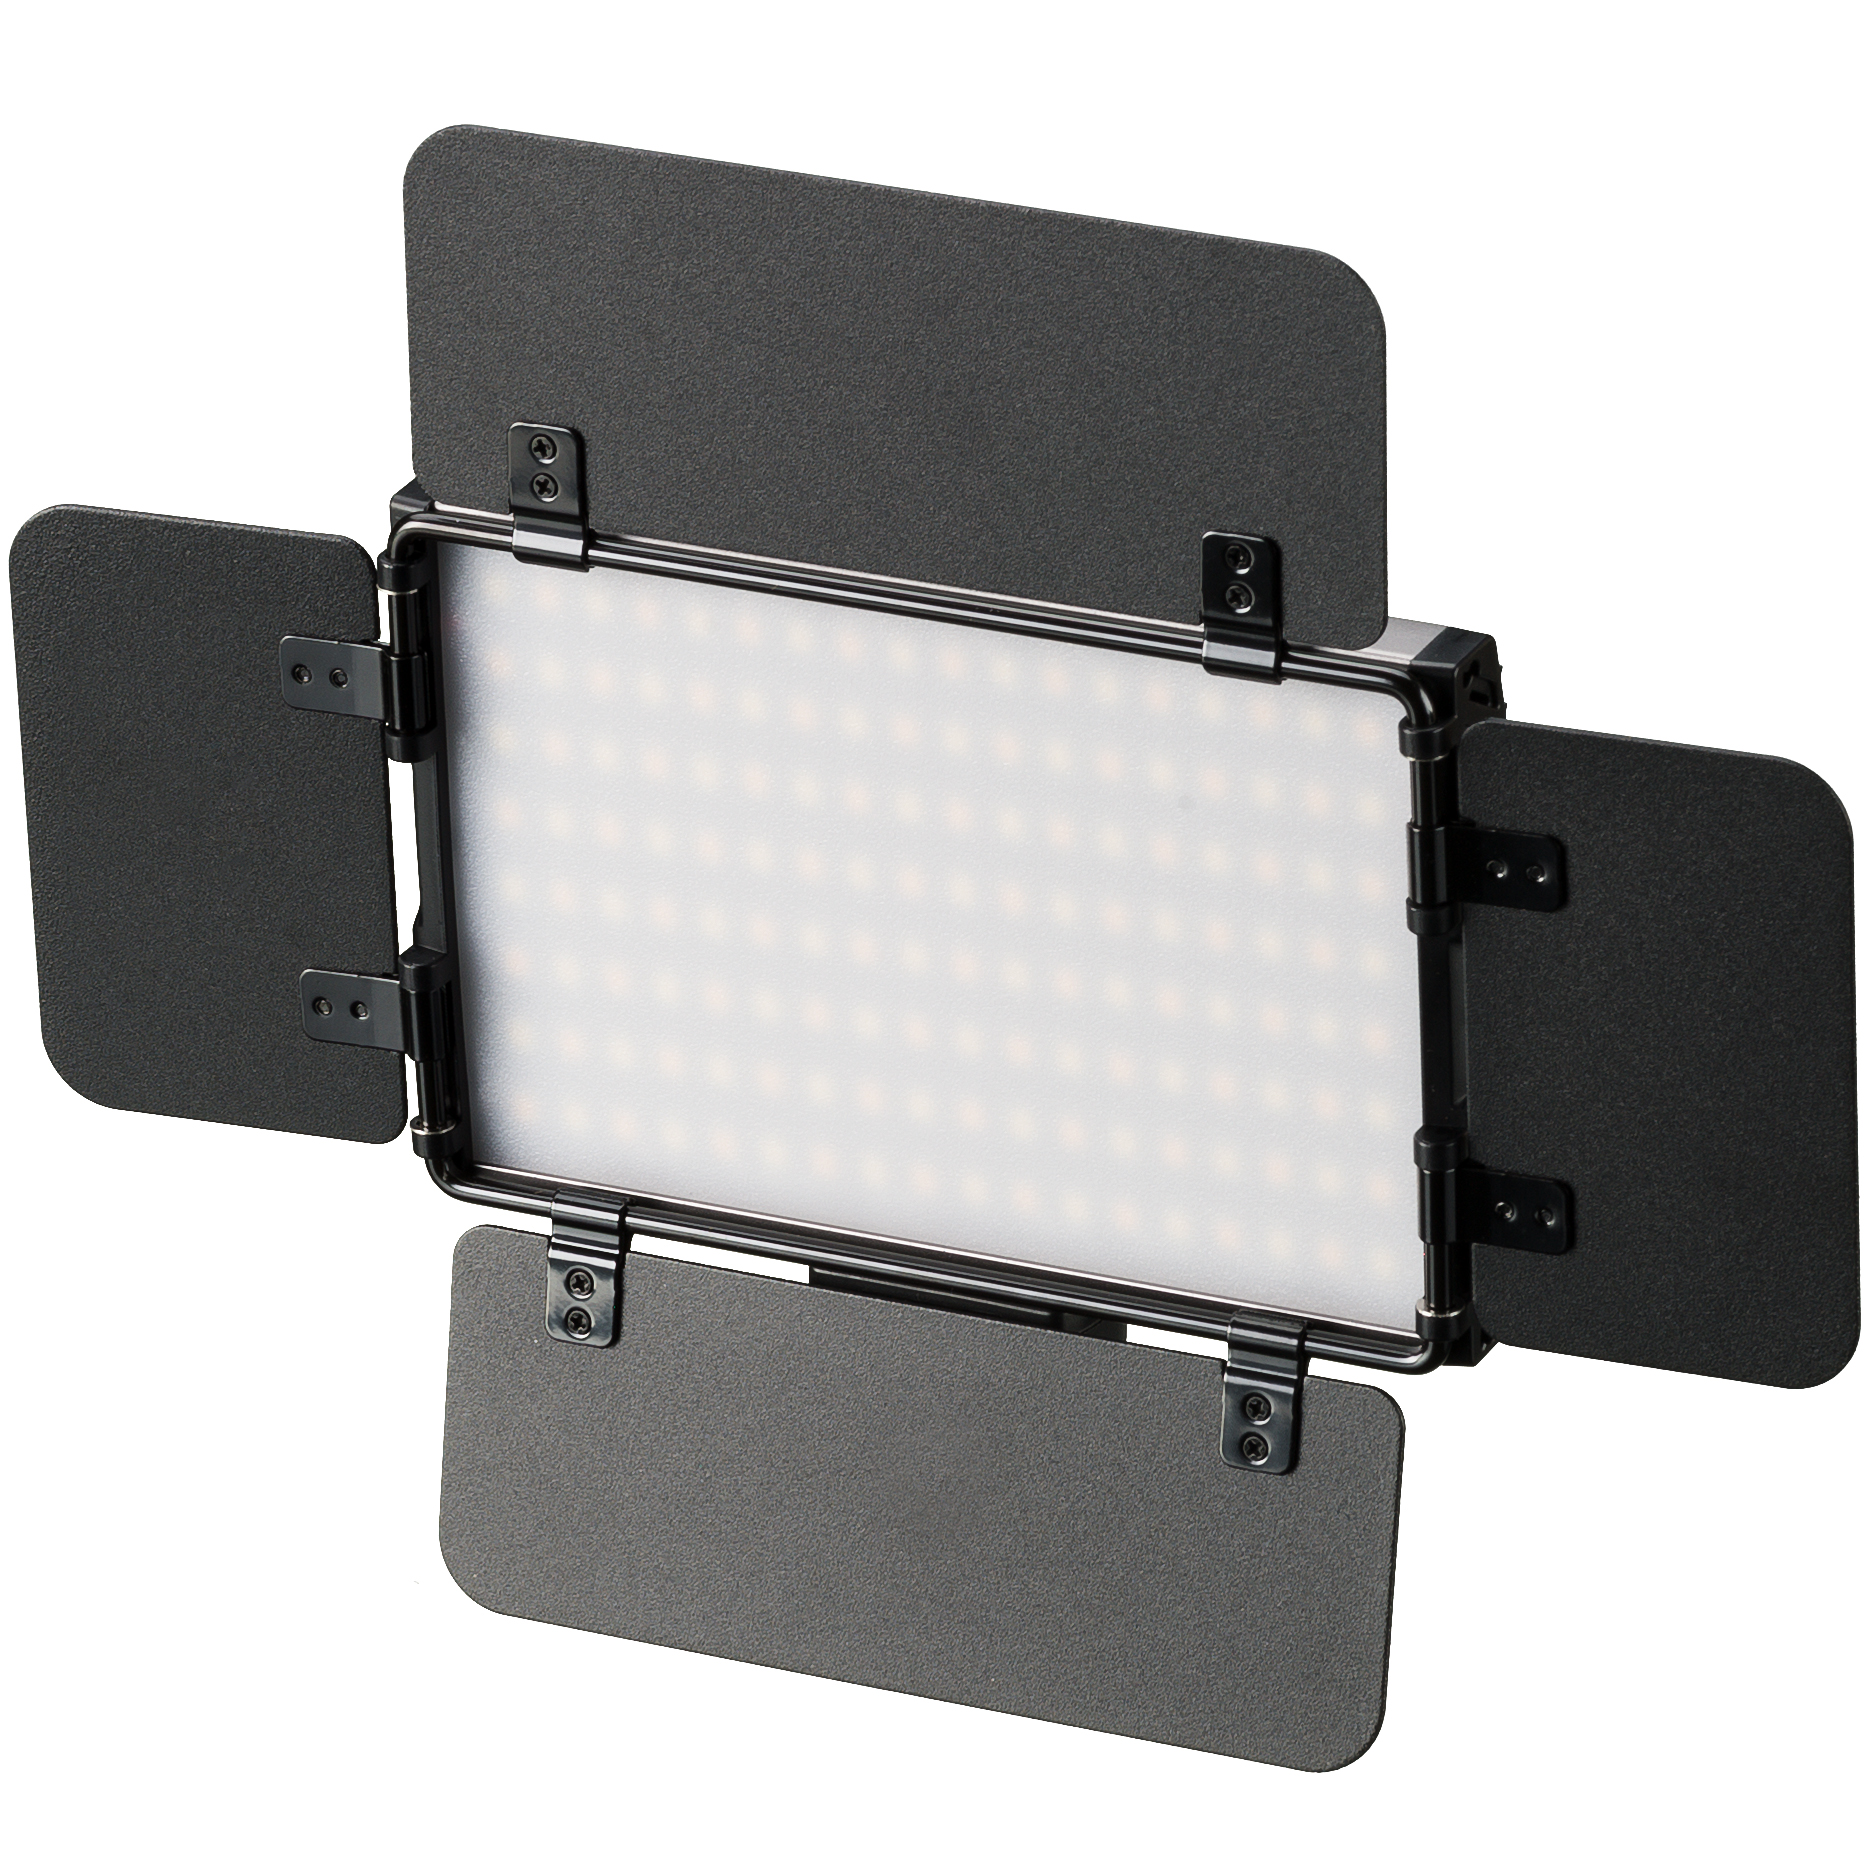 Antorcha de Vídeo BRESSER PT Pro 15B-II bicolor LED con Viseras, Batería recargable y Estuche